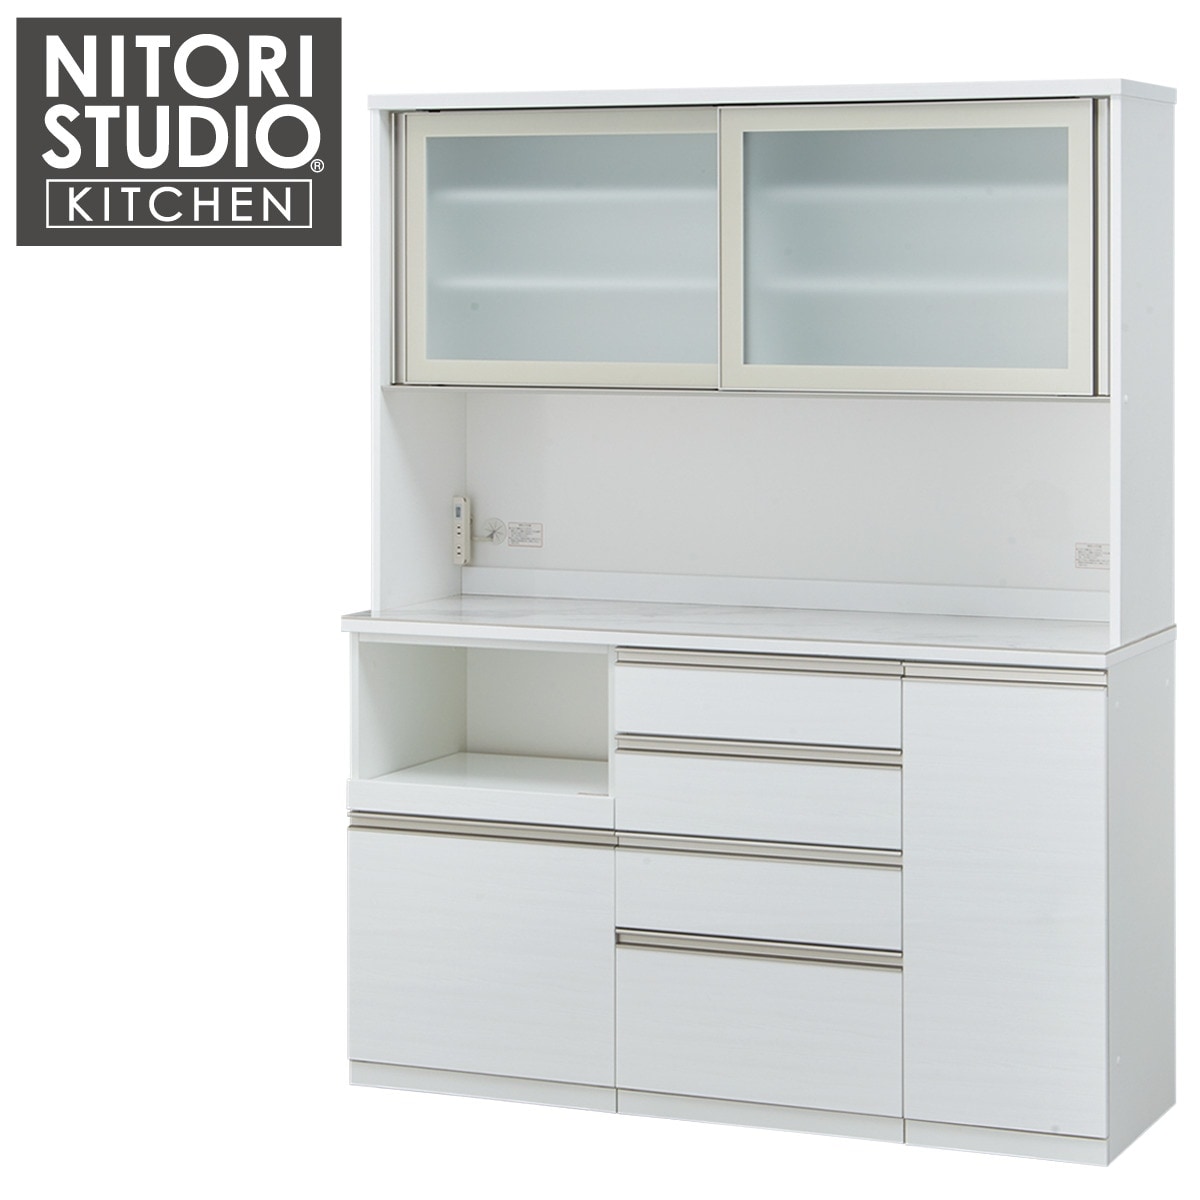 ニトリ 食器棚 リガーレ 160 ホワイト 組み合わせ自由 - キッチン収納